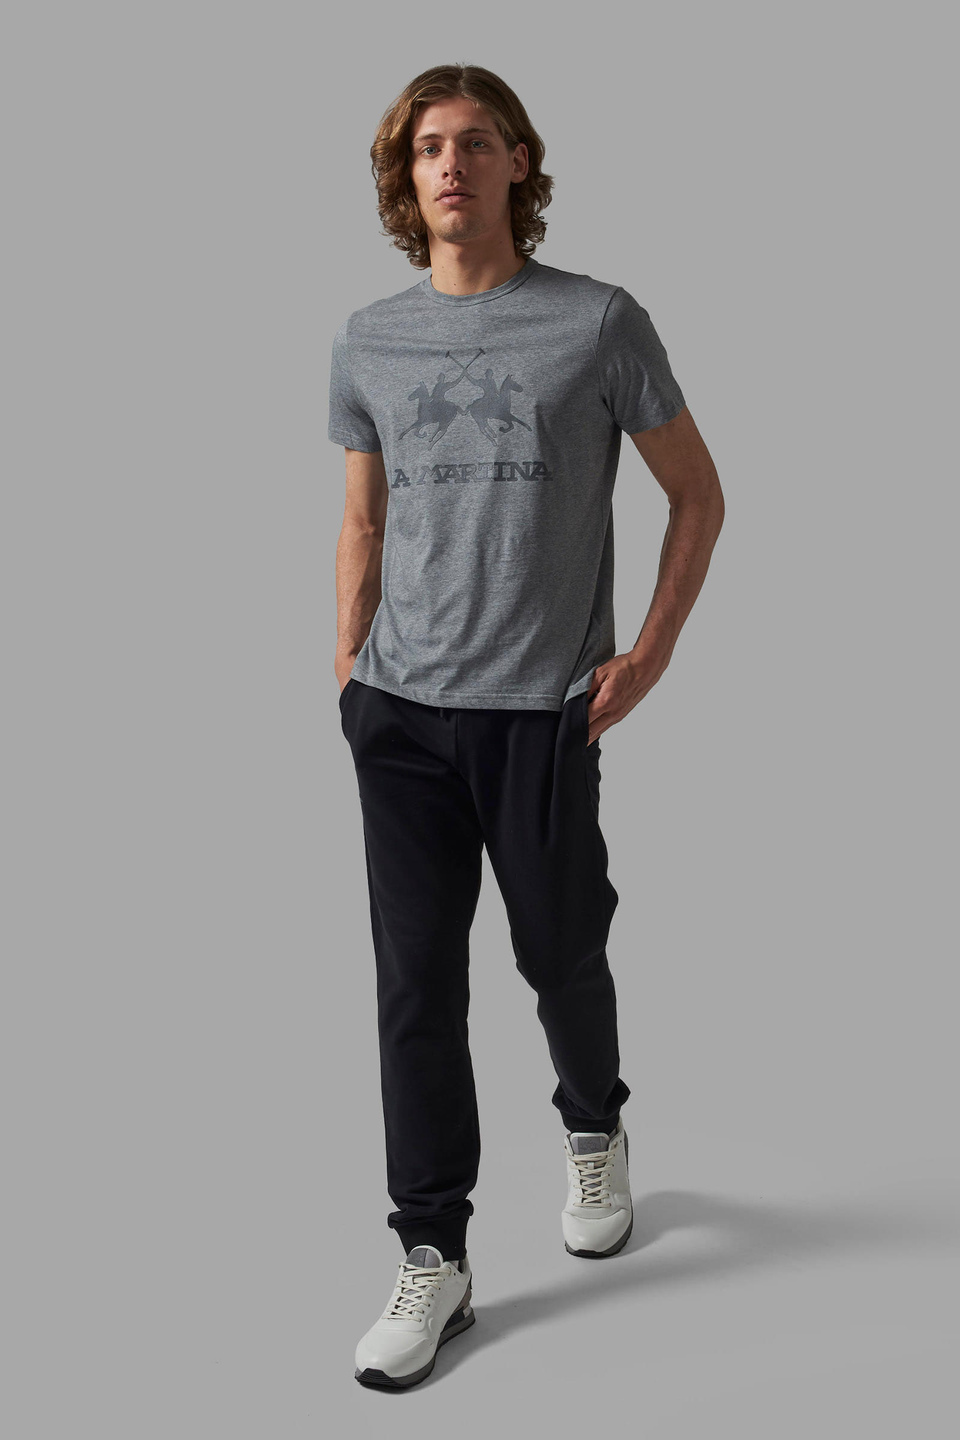 Camiseta de hombre regular fit - La Martina - Official Online Shop